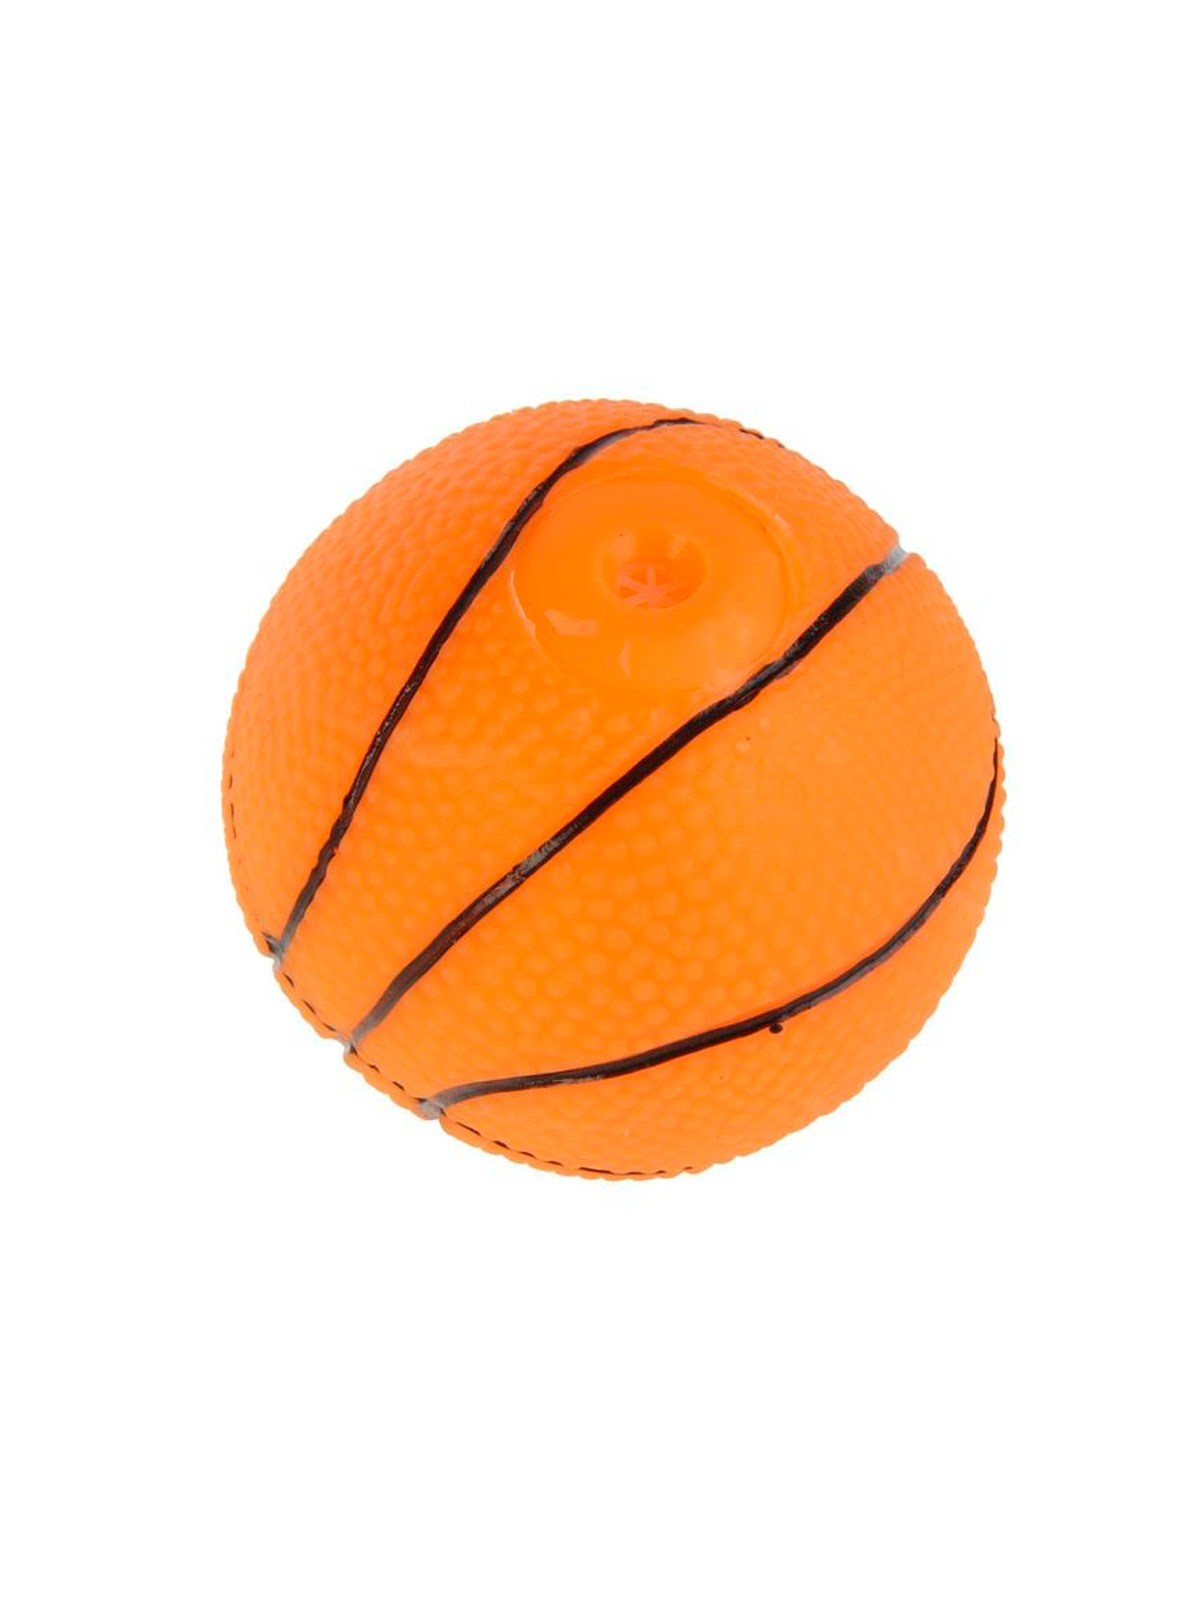 Игрушка для животных "Мяч баскетбольный", 7 см